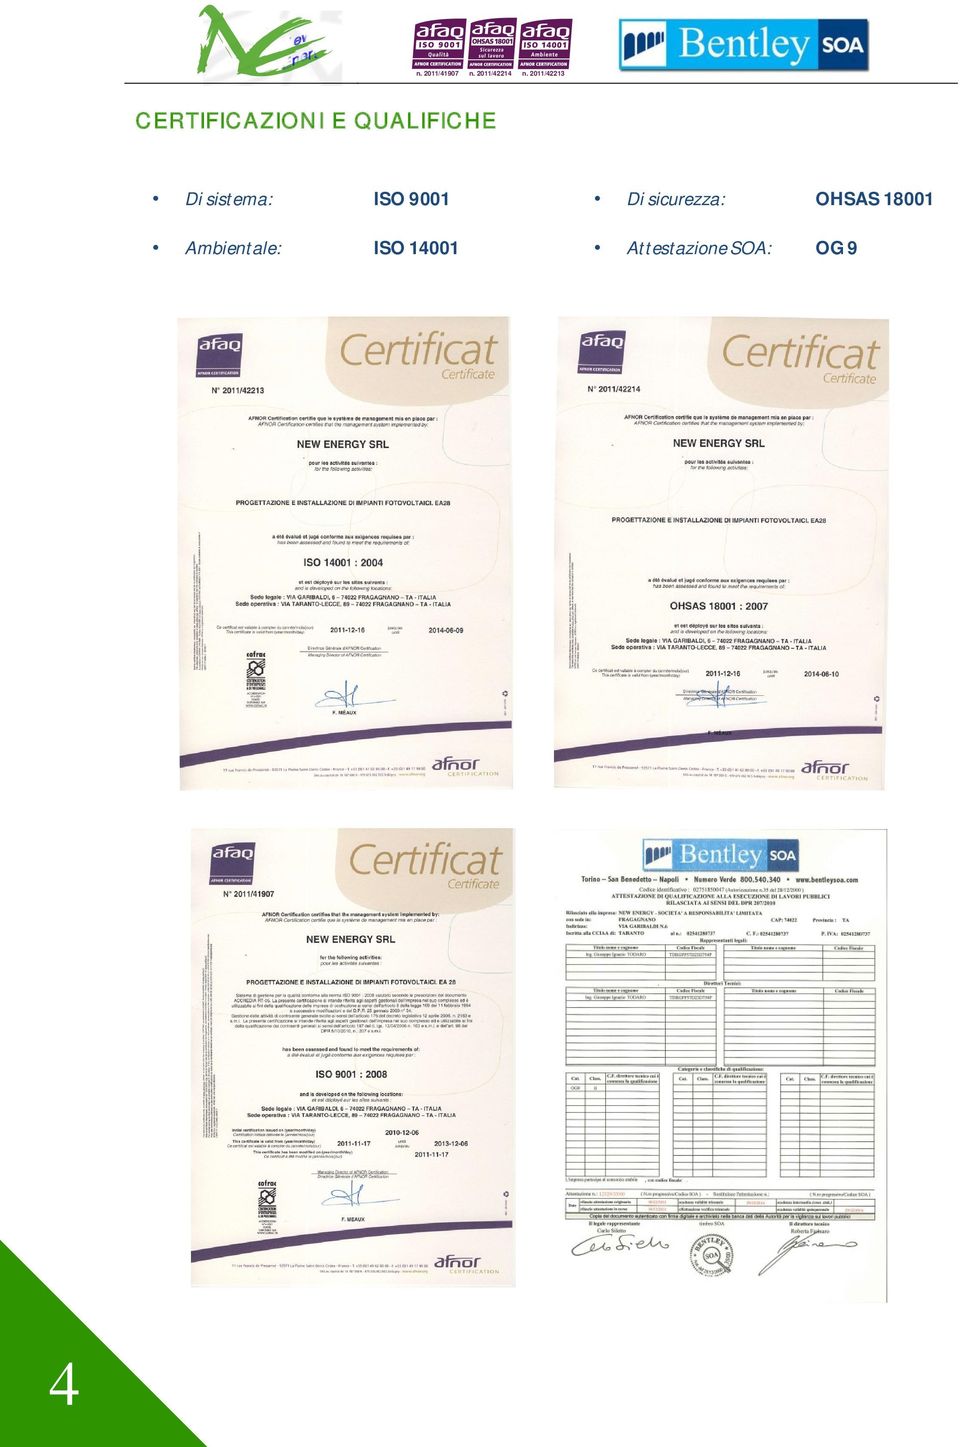 Cerfd'cafe AFNOR Certification certifie que le système de management mis en place par : AFNOR Certification ceftifies that the management system implemented by: NEW ENERGY SRL pour les activités